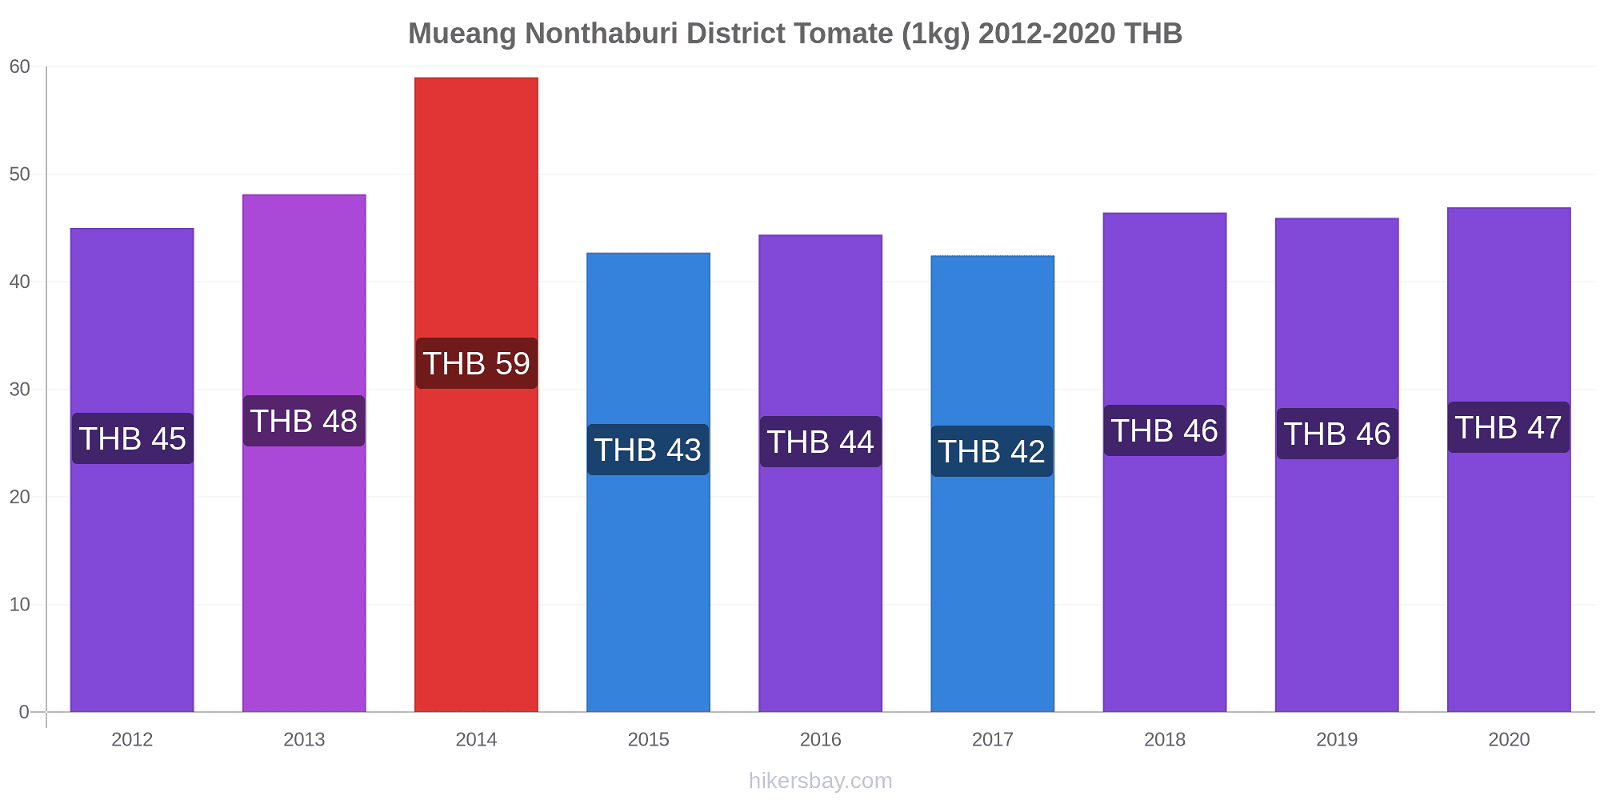 Mueang Nonthaburi District variação de preço Tomate (1kg) hikersbay.com